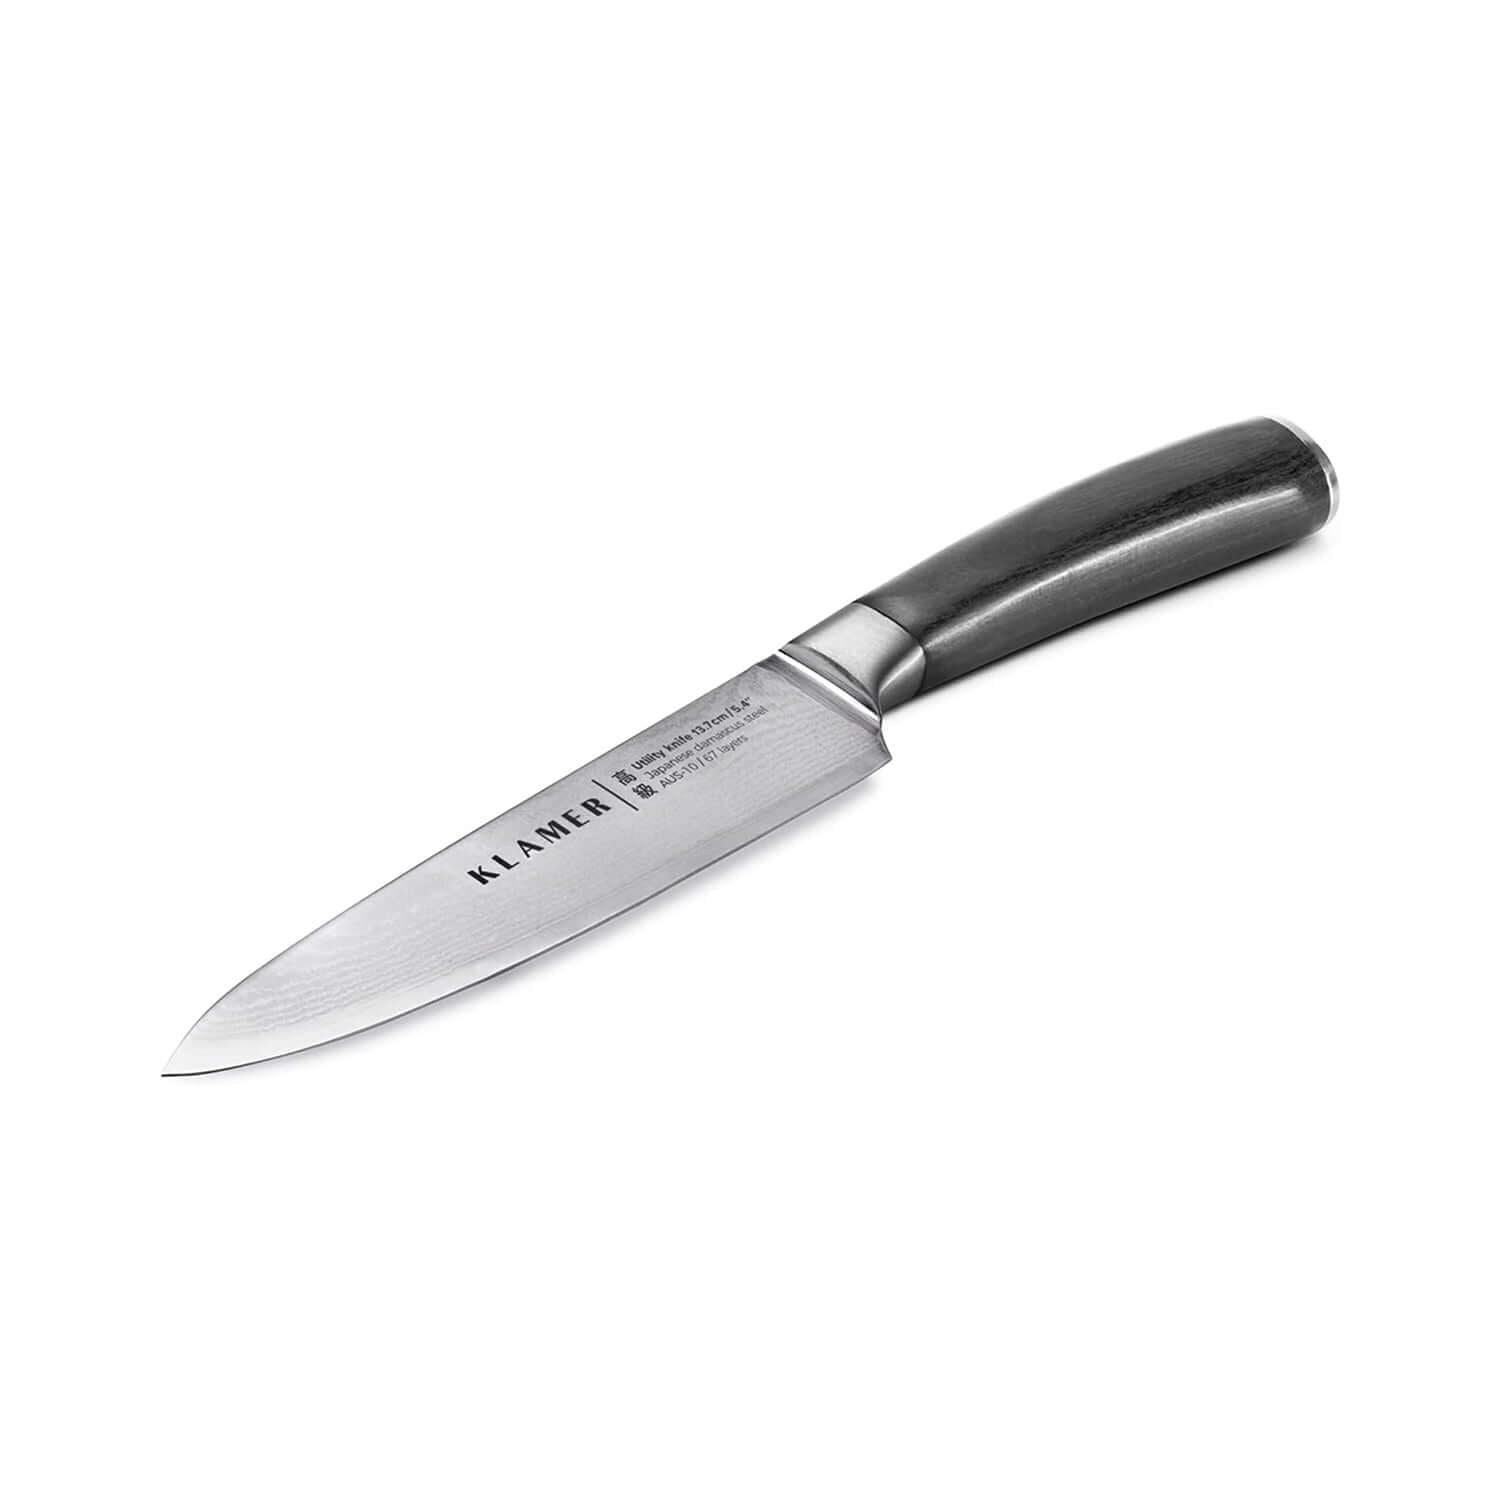 Messer Allzweckmesser Damast 13.7cm KLAMER